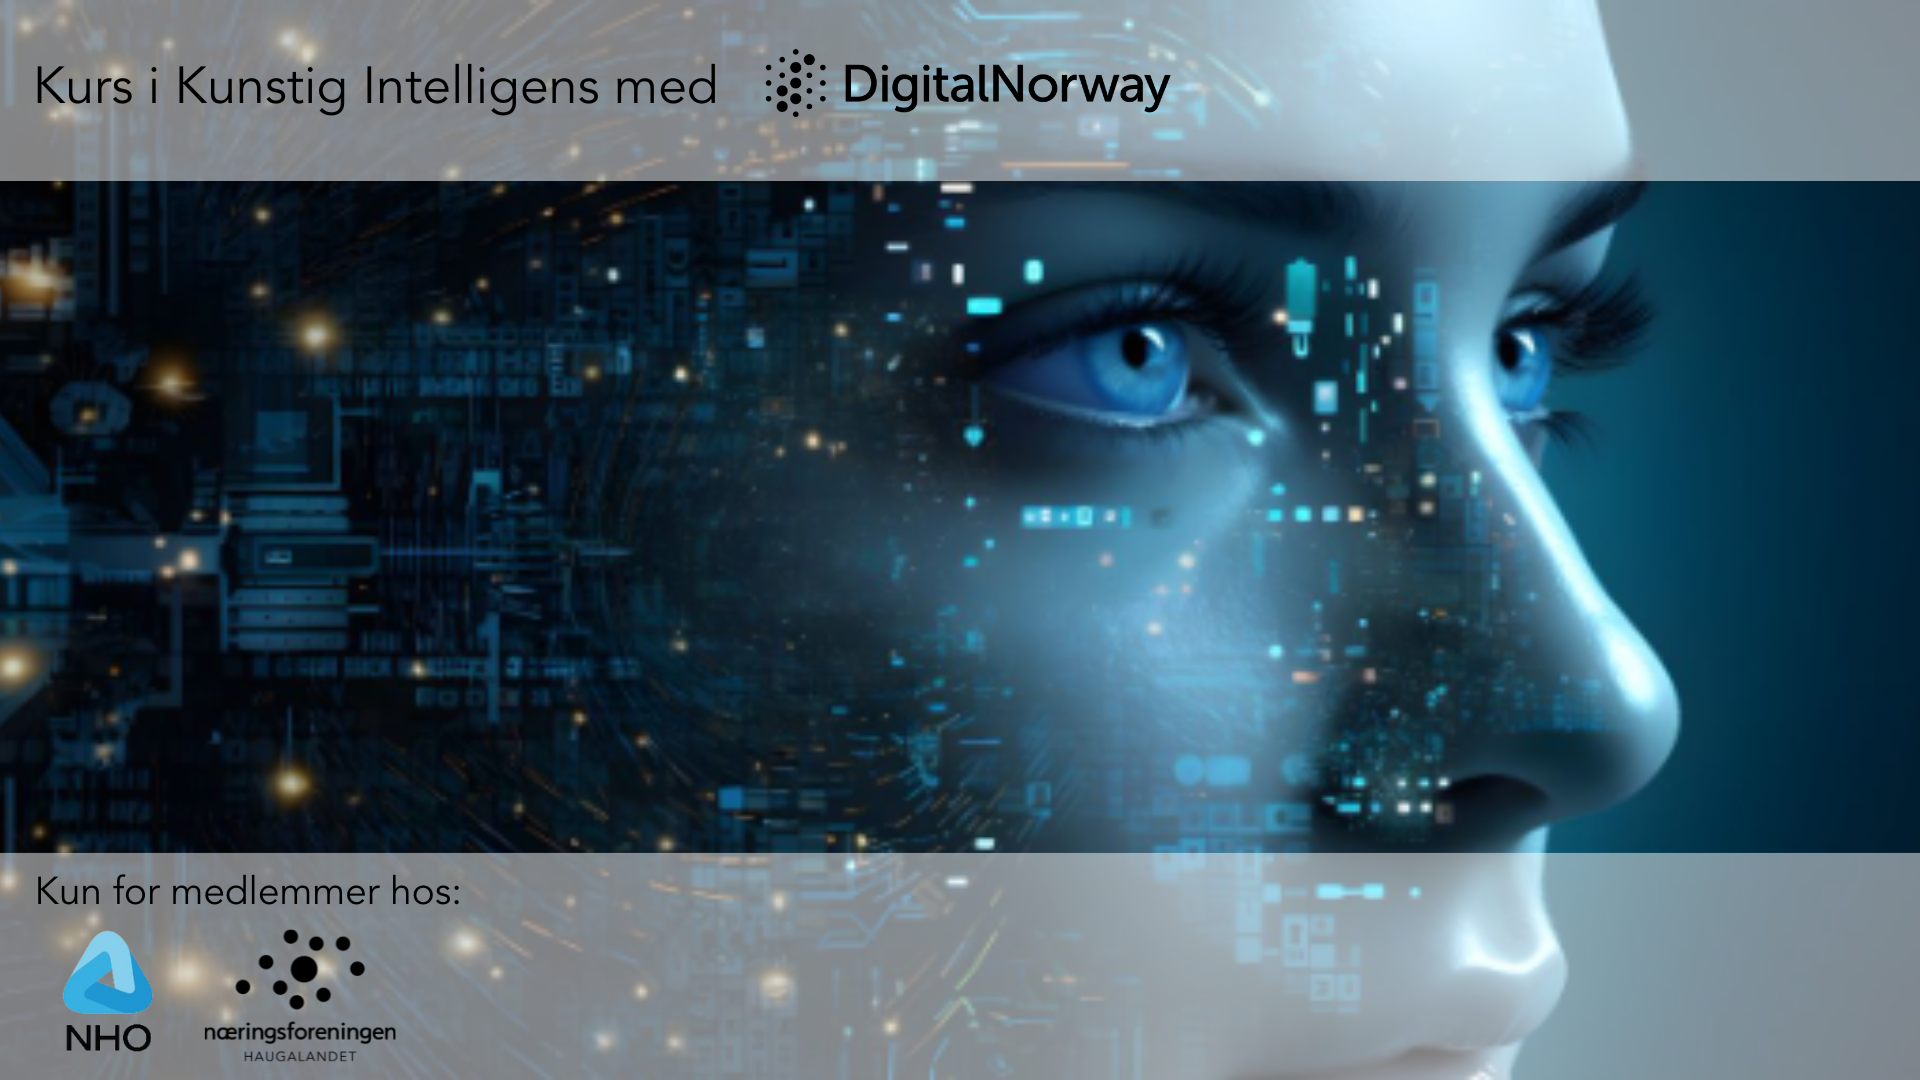 Kurs om kunstig intelligens med Digital Norway (kun for medl.)